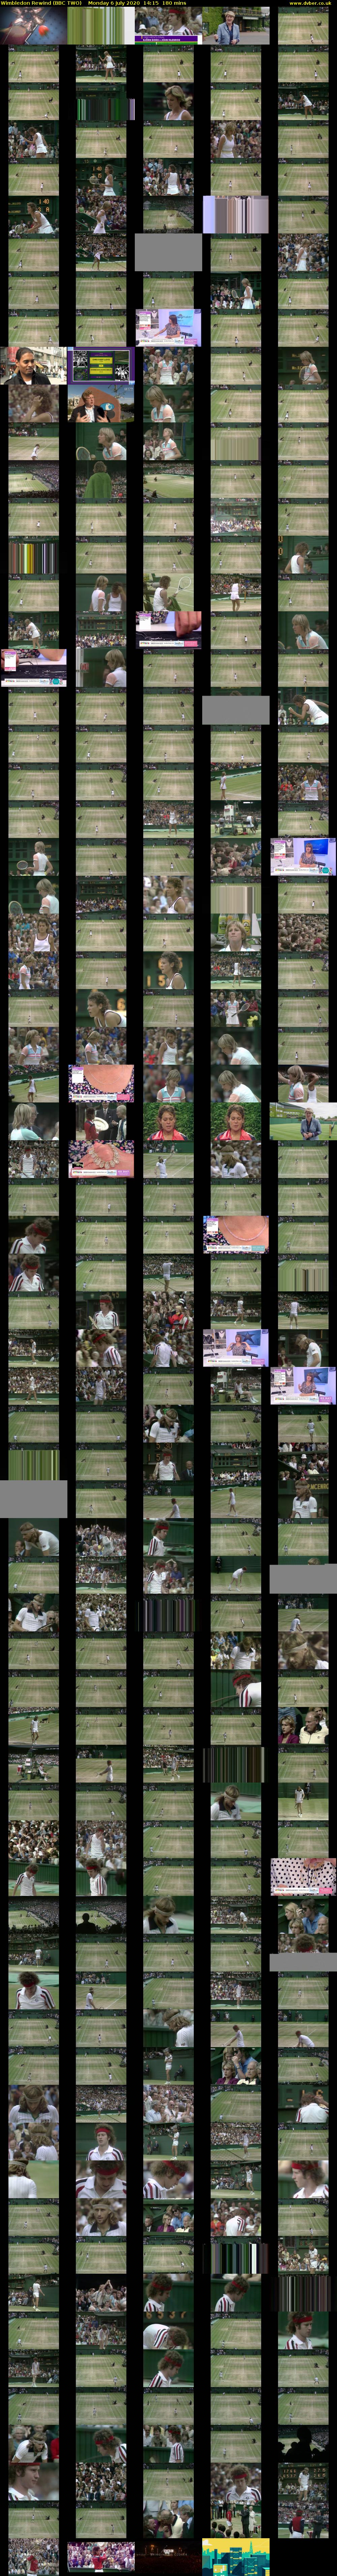 Wimbledon Rewind (BBC TWO) Monday 6 July 2020 14:15 - 17:15